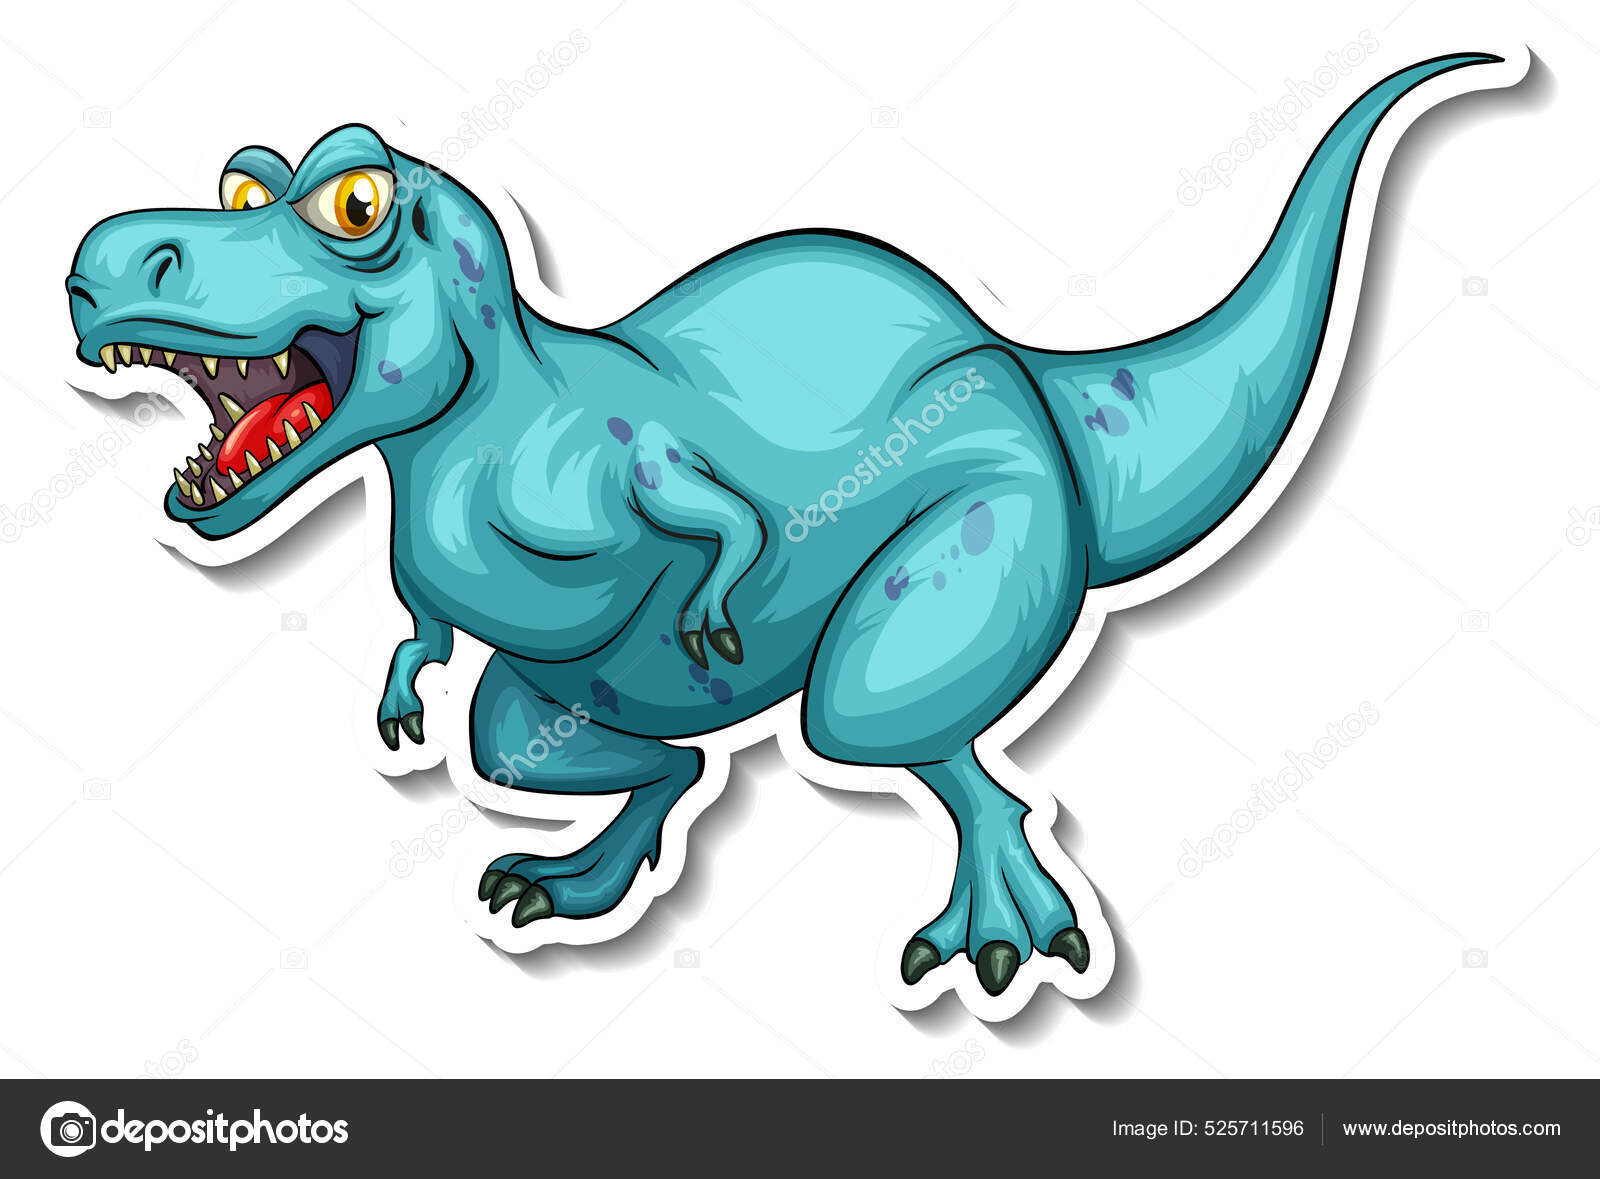 Tyrannosaurus Dinossauro Desenho Animado Personagem Etiqueta Ilustração  imagem vetorial de interactimages© 522192422